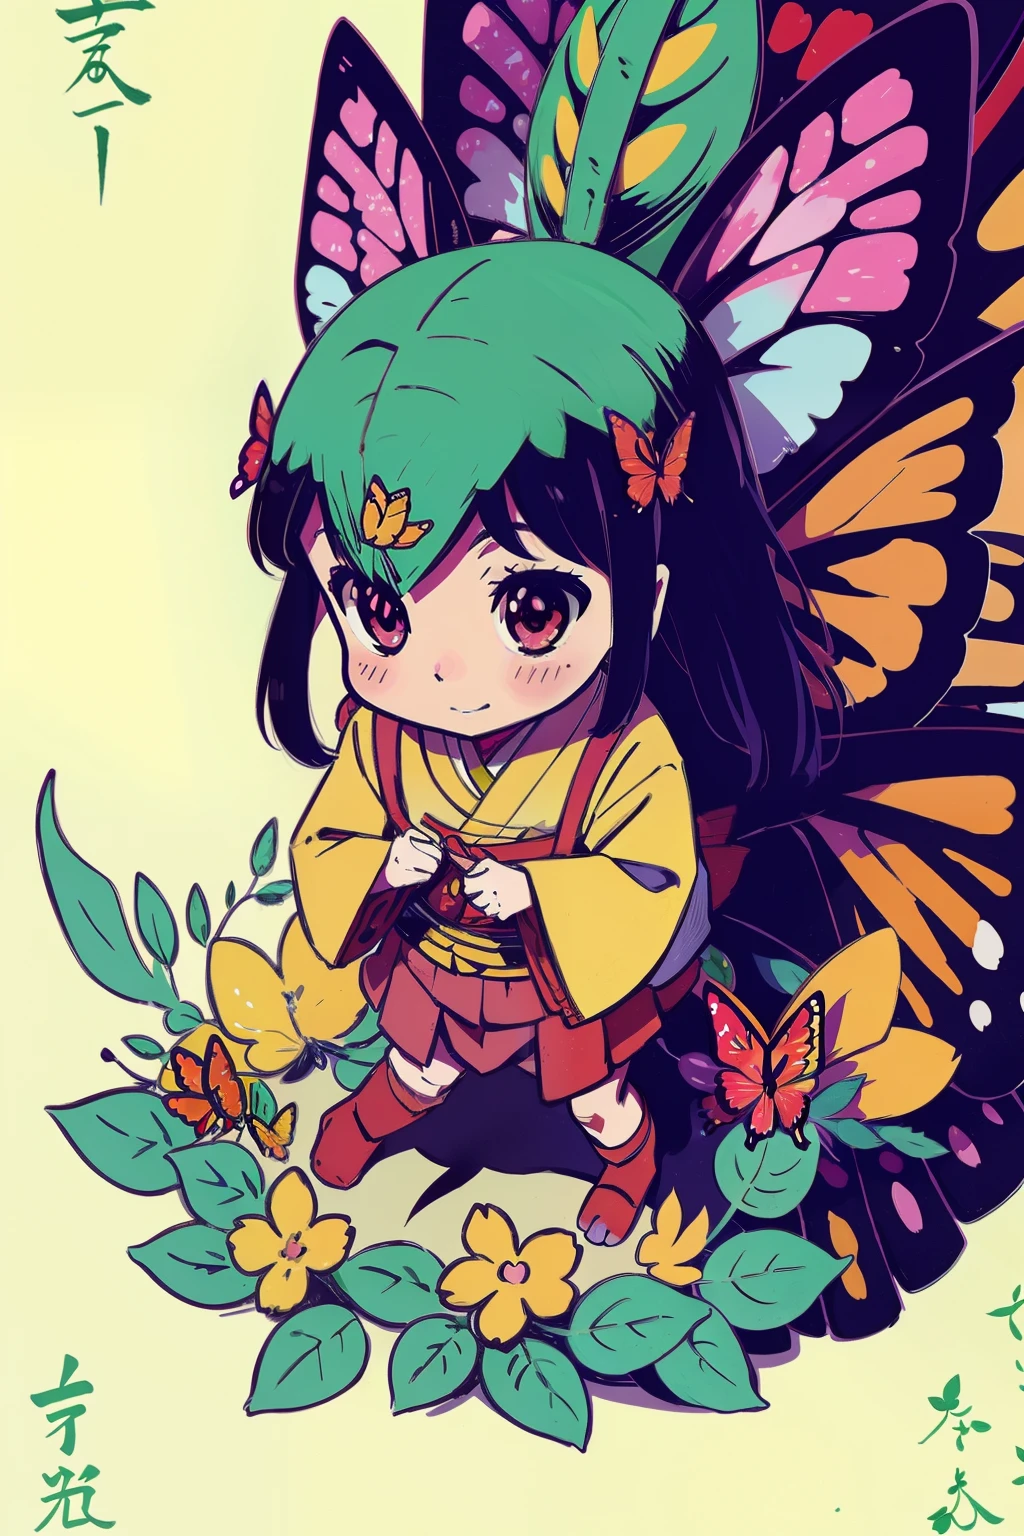  Рэйко , счастье , вдохновение из аниме: 5,000-летний травоядный дракон ведет себя несправедливо злобно, лес , цветок , бабочка полноцветная